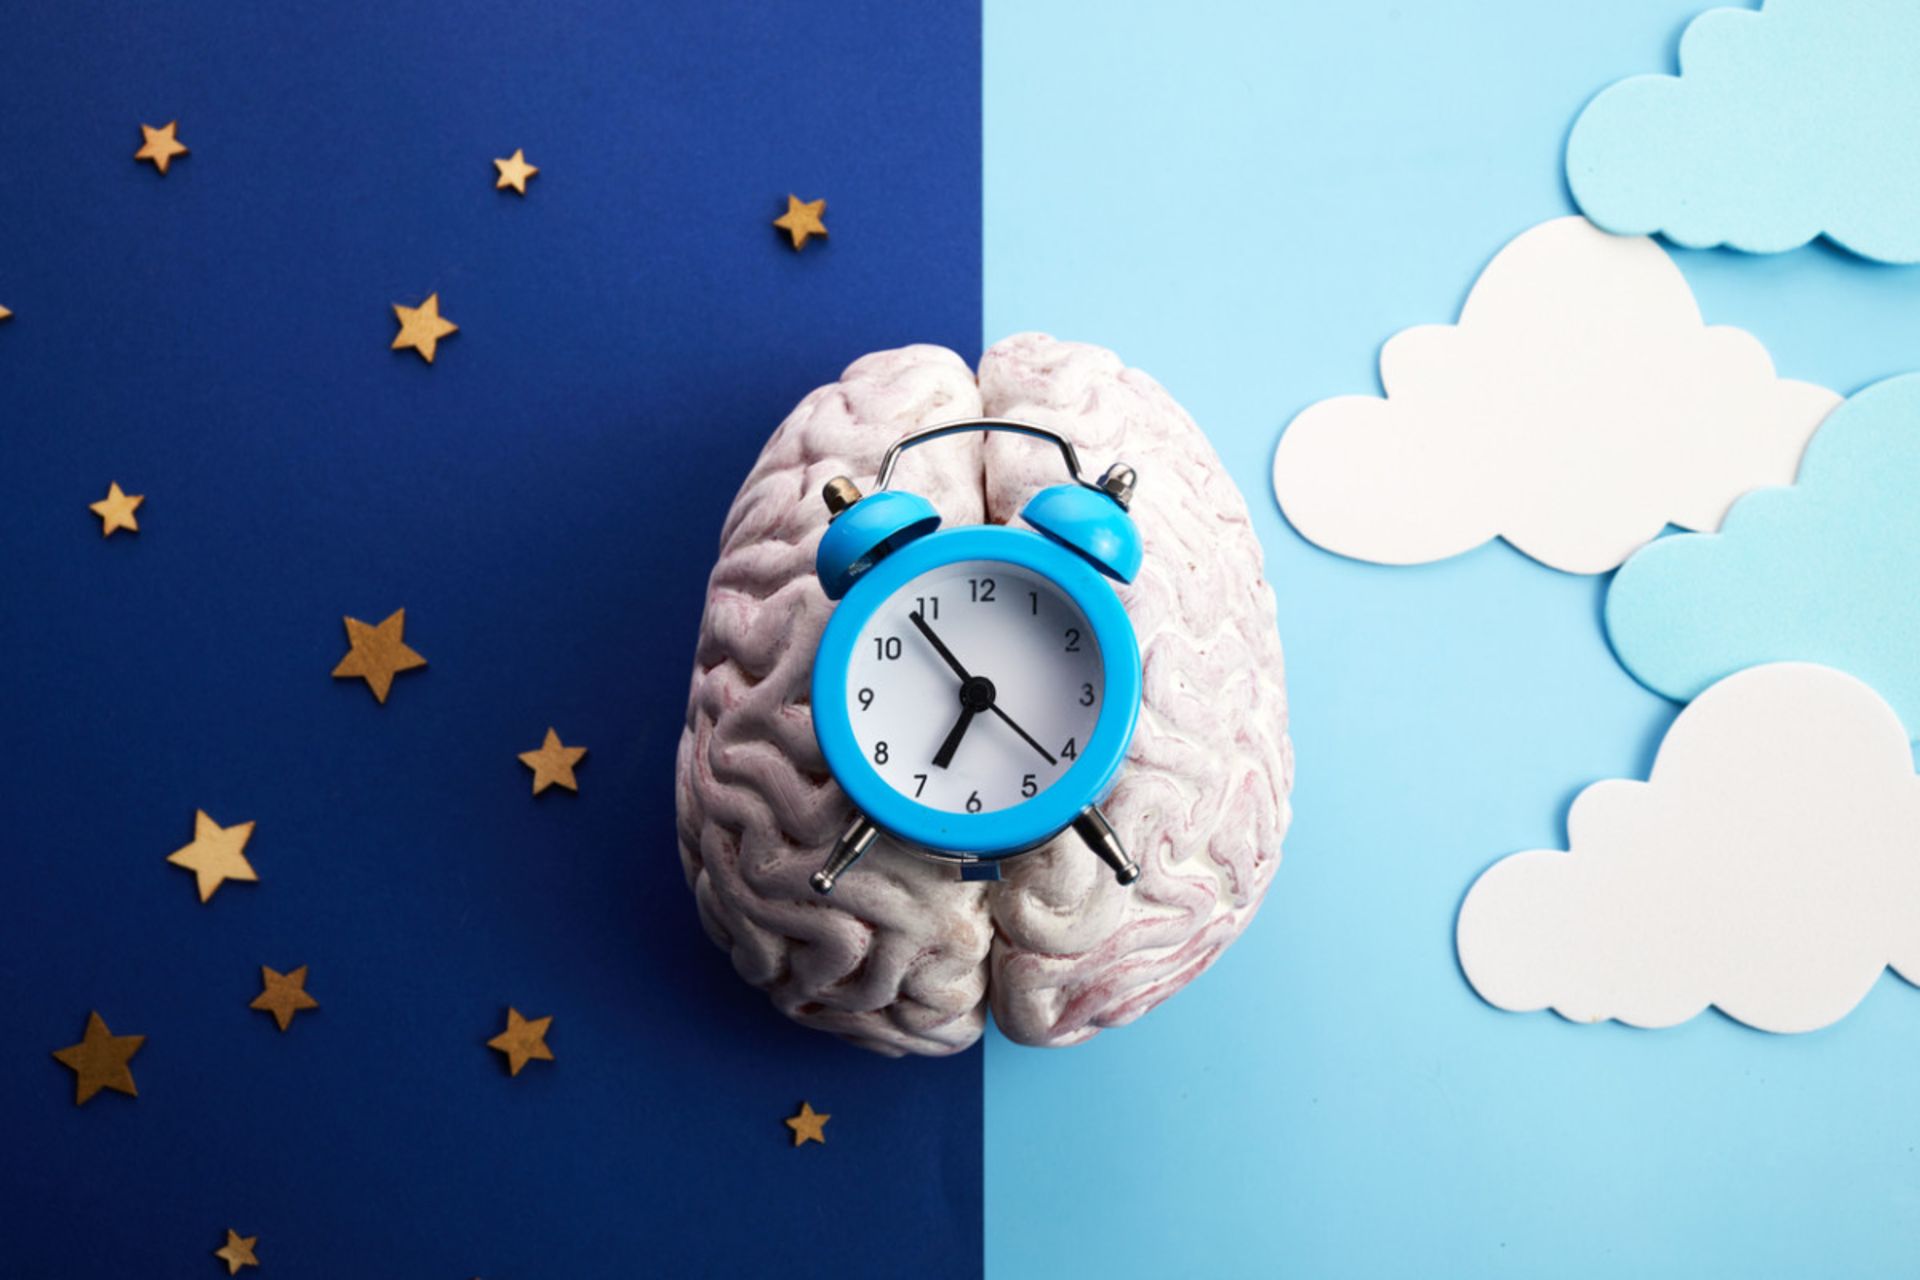 ساعت بیولوژیکی- یک ساعت کوکی روی یک شماتیک مغز و تصویرسازی شب و روز در دو سمت تصویر